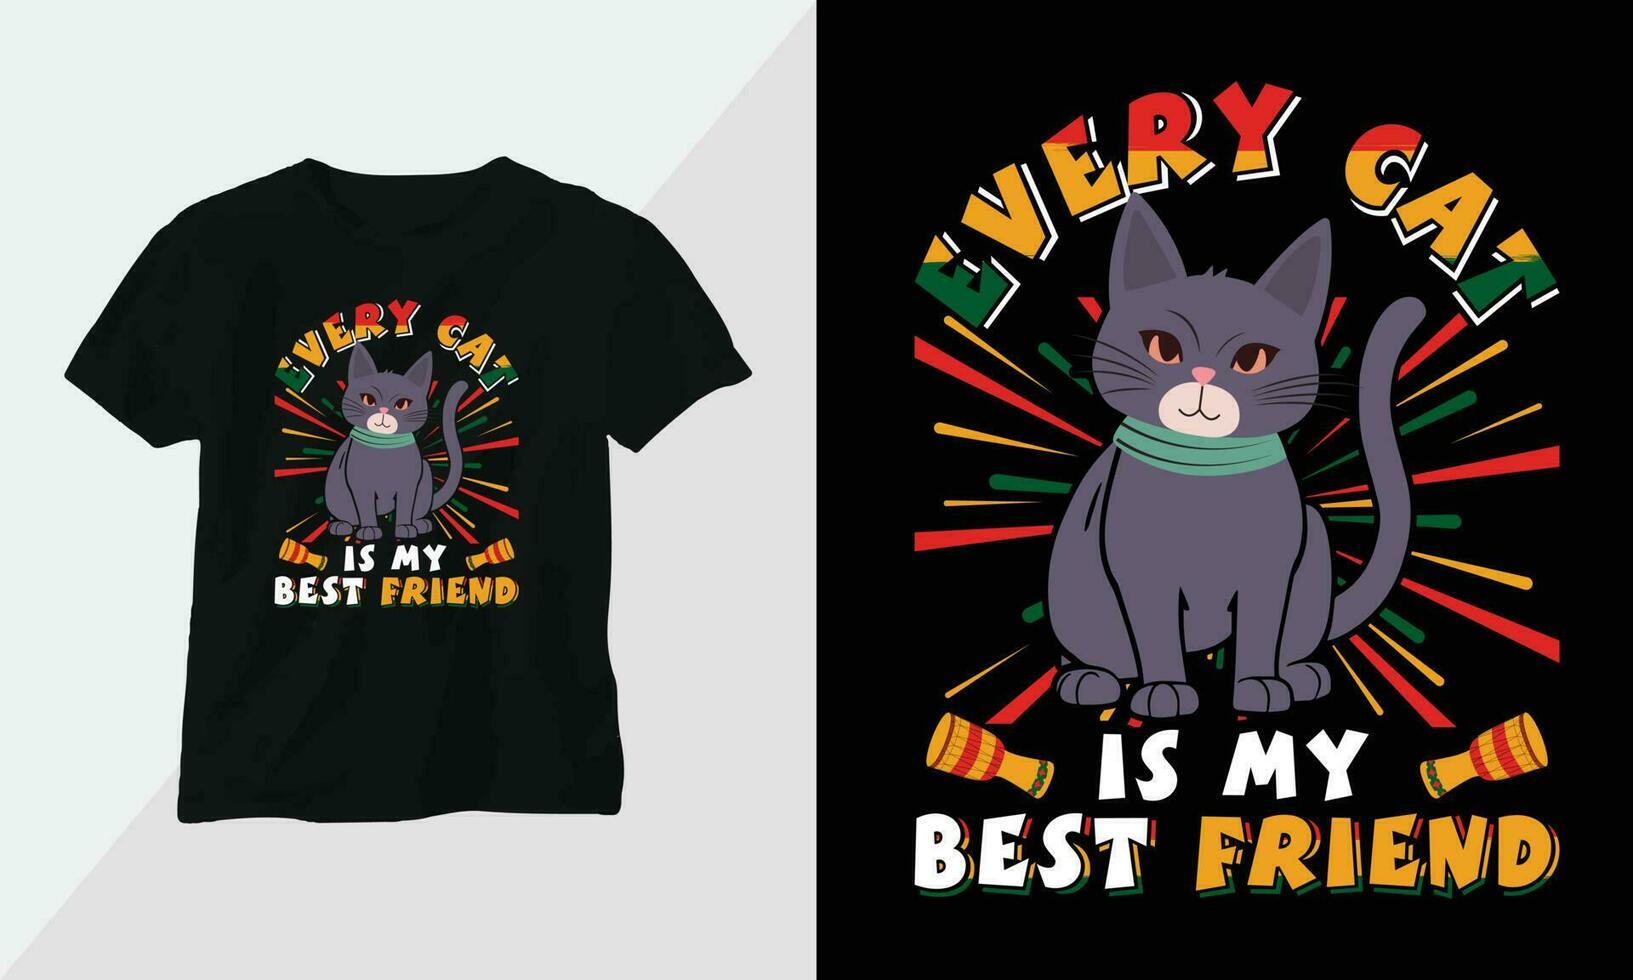 jeder Katze ist meine Beste Freund - - Katze T-Shirt und bekleidung Design. Vektor drucken, Typografie, Poster, Emblem, Festival